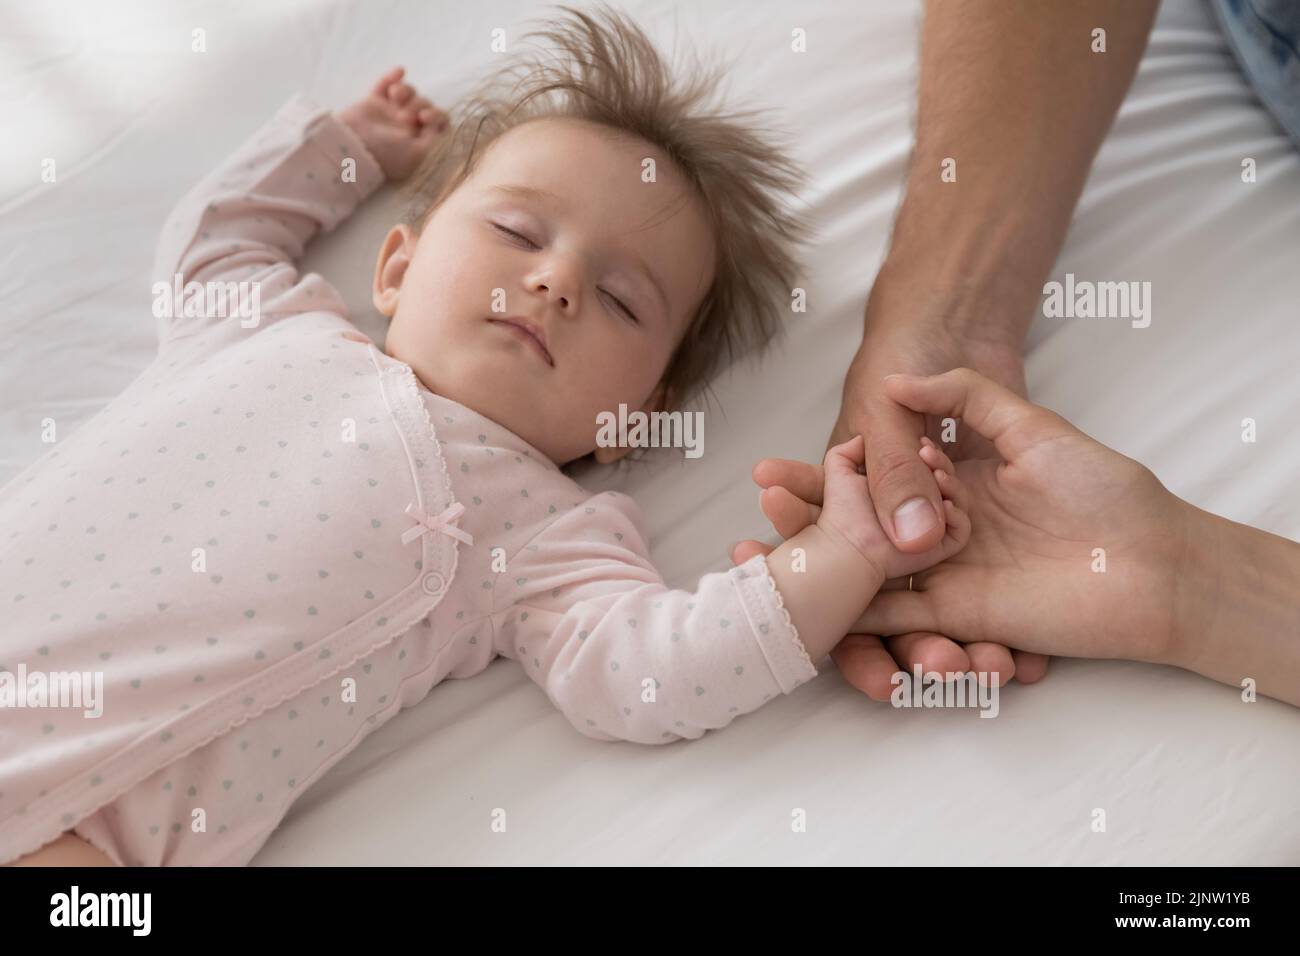 Lindo recién nacido durmiendo en la cama toque las manos amorosas de los padres Foto de stock